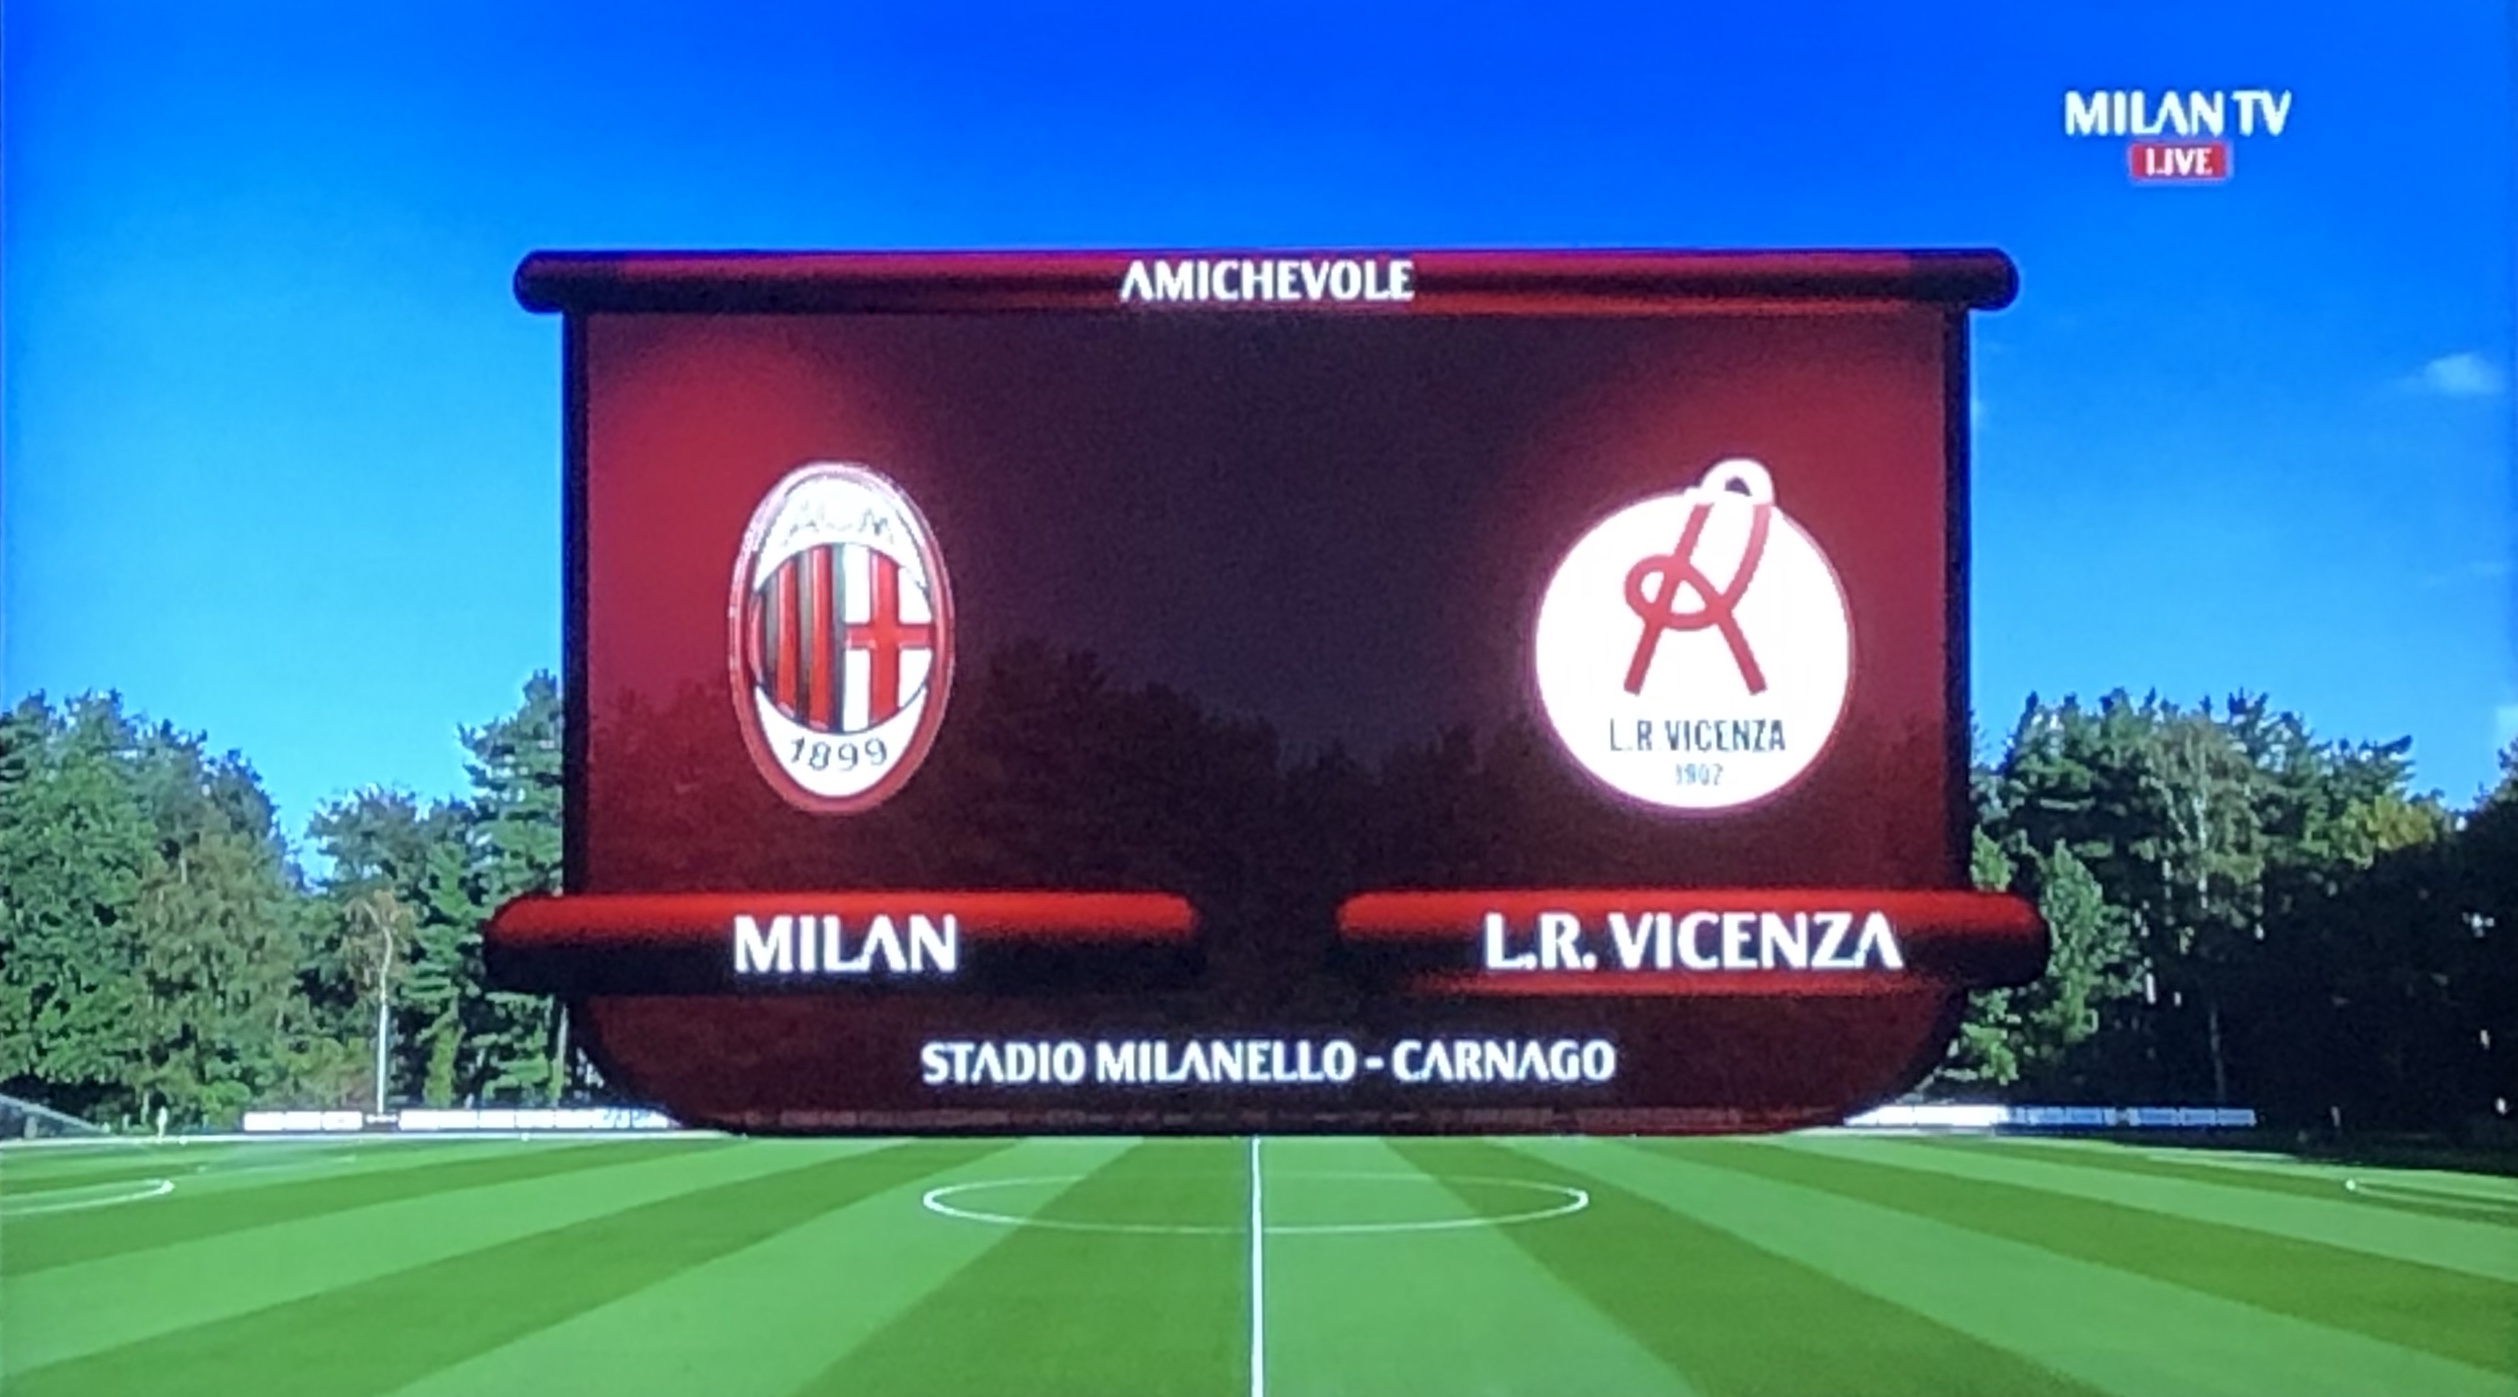 Milan-L.R. Vicenza: 5-1 (amichevole)